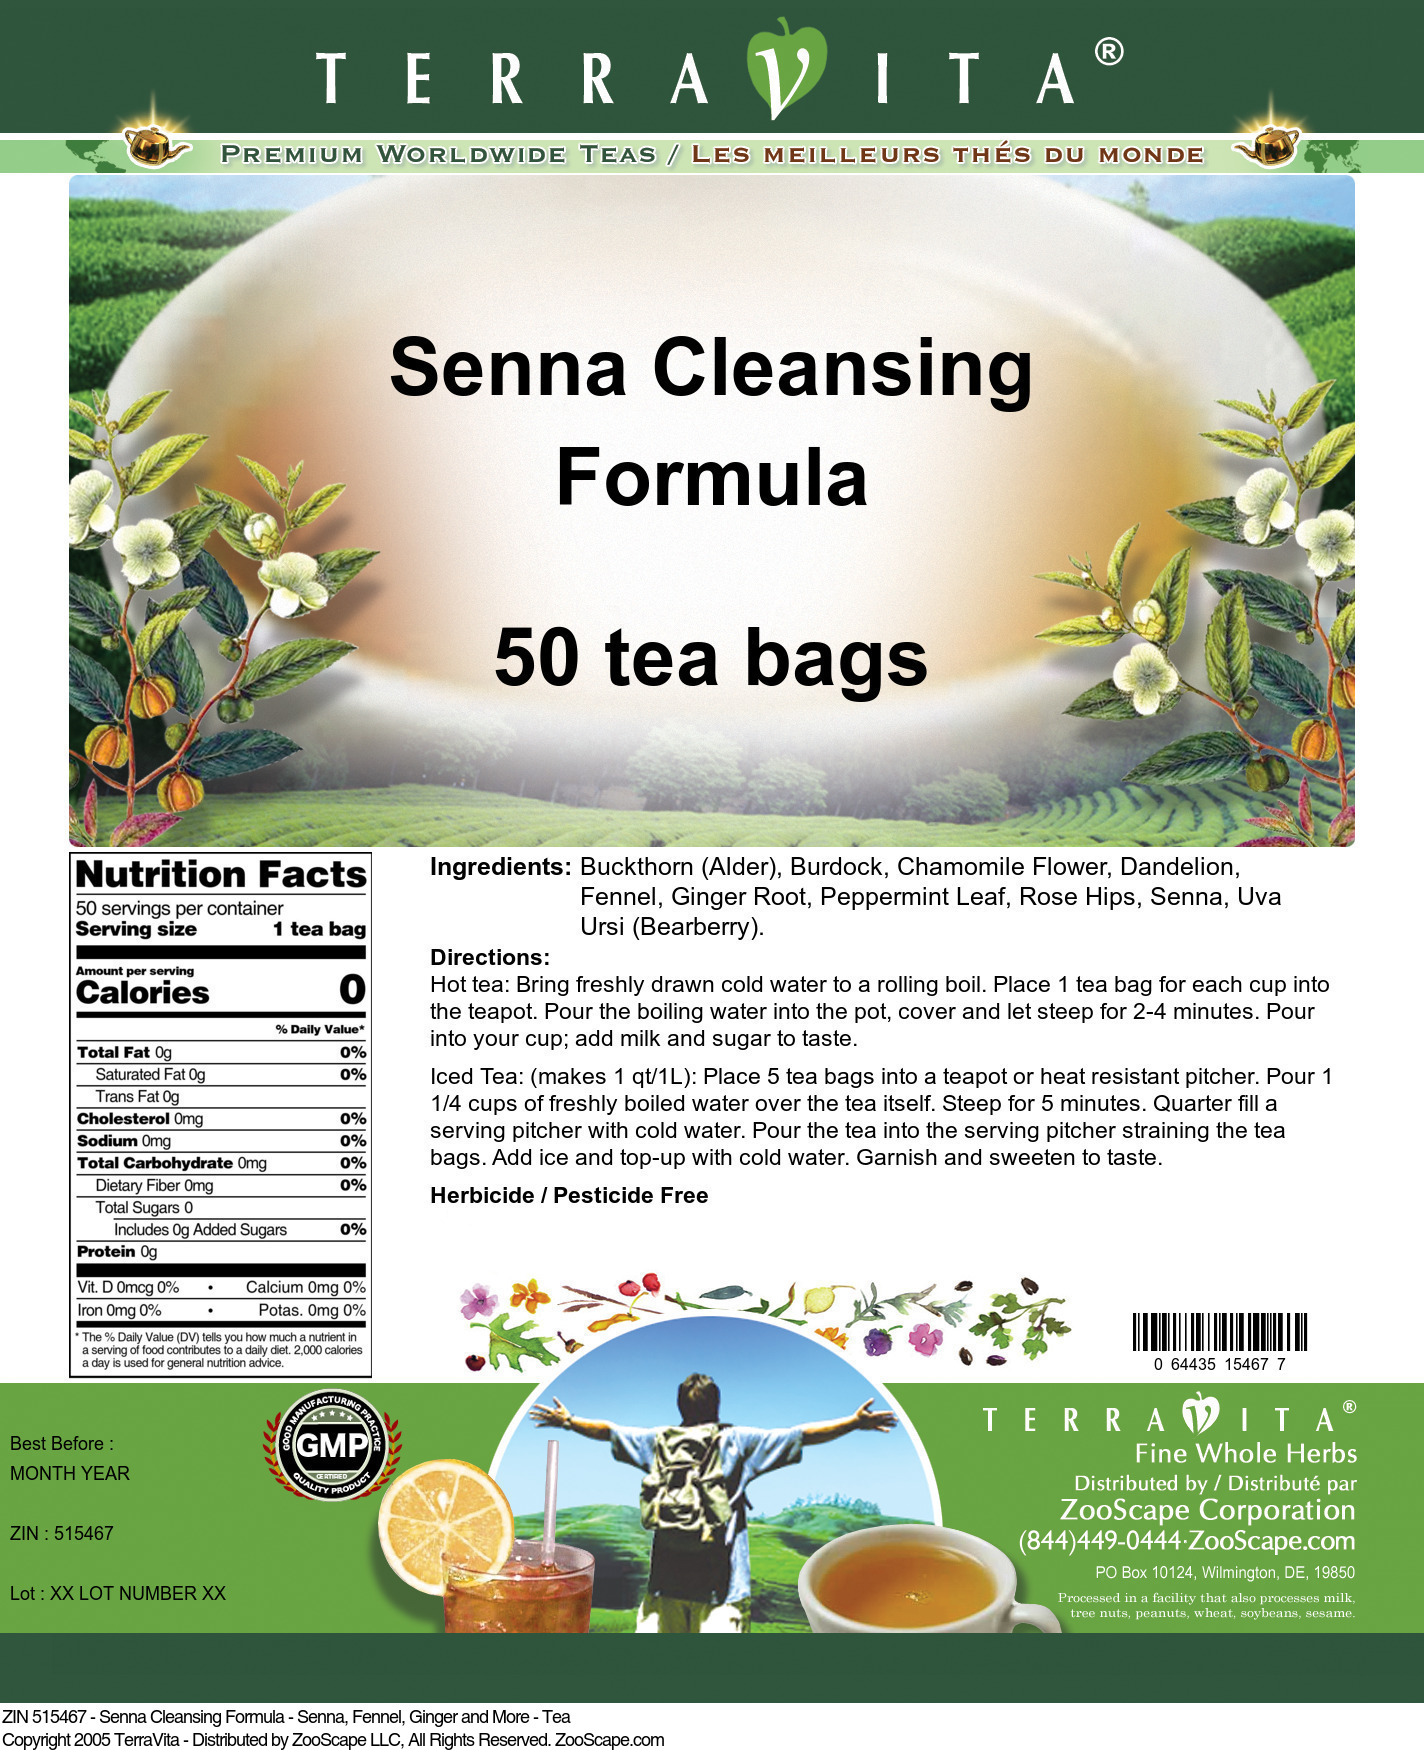 Senna Cleansing Formula - Senna, Fennel, Ginger and More - Tea - Label